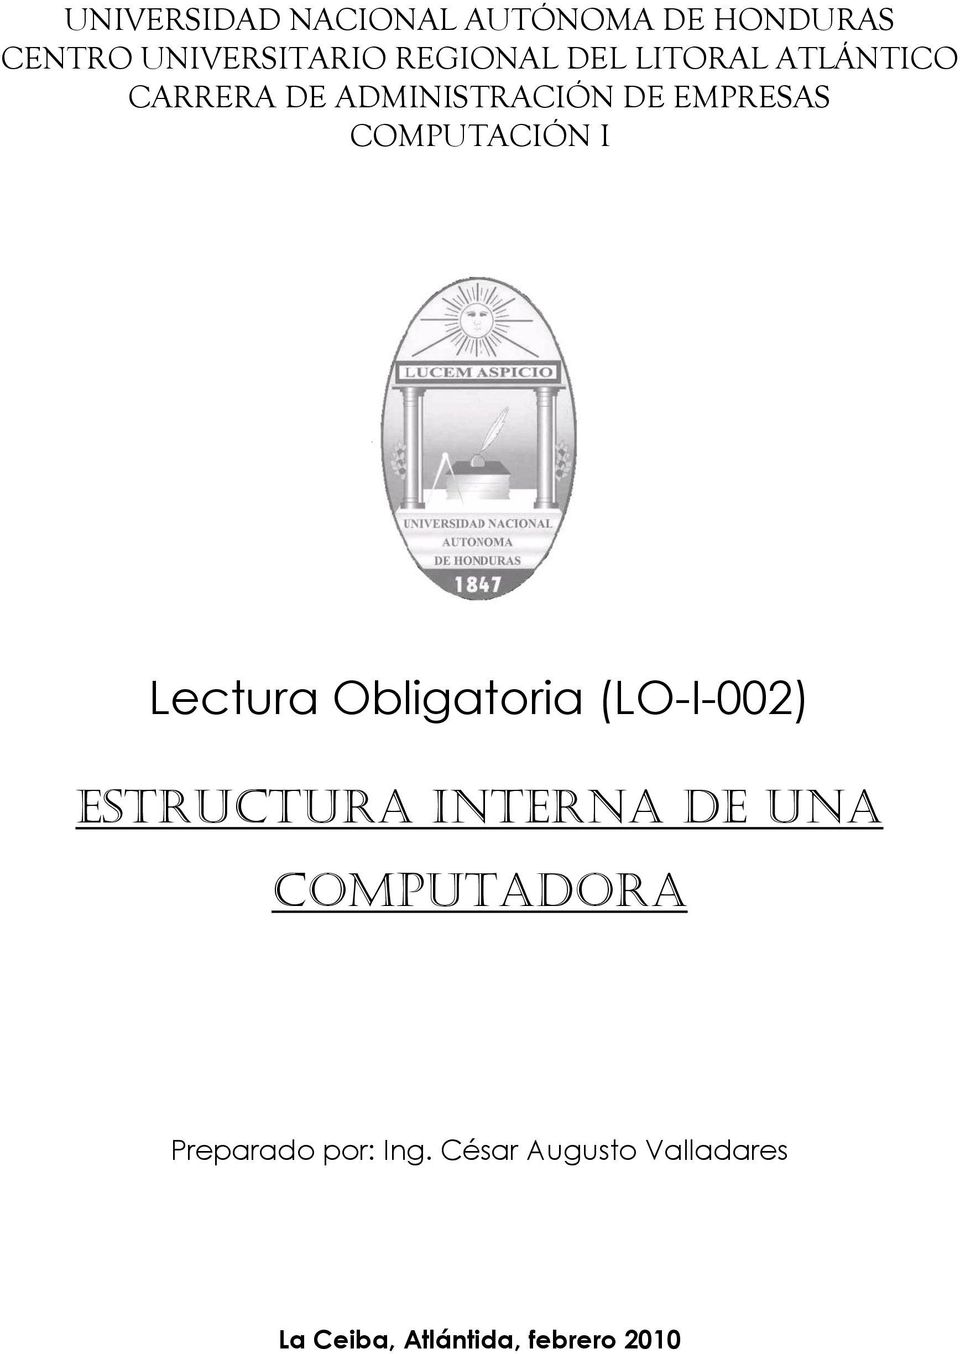 Lectura Obligatoria (LO-I-002) Estructura Interna de una computadora